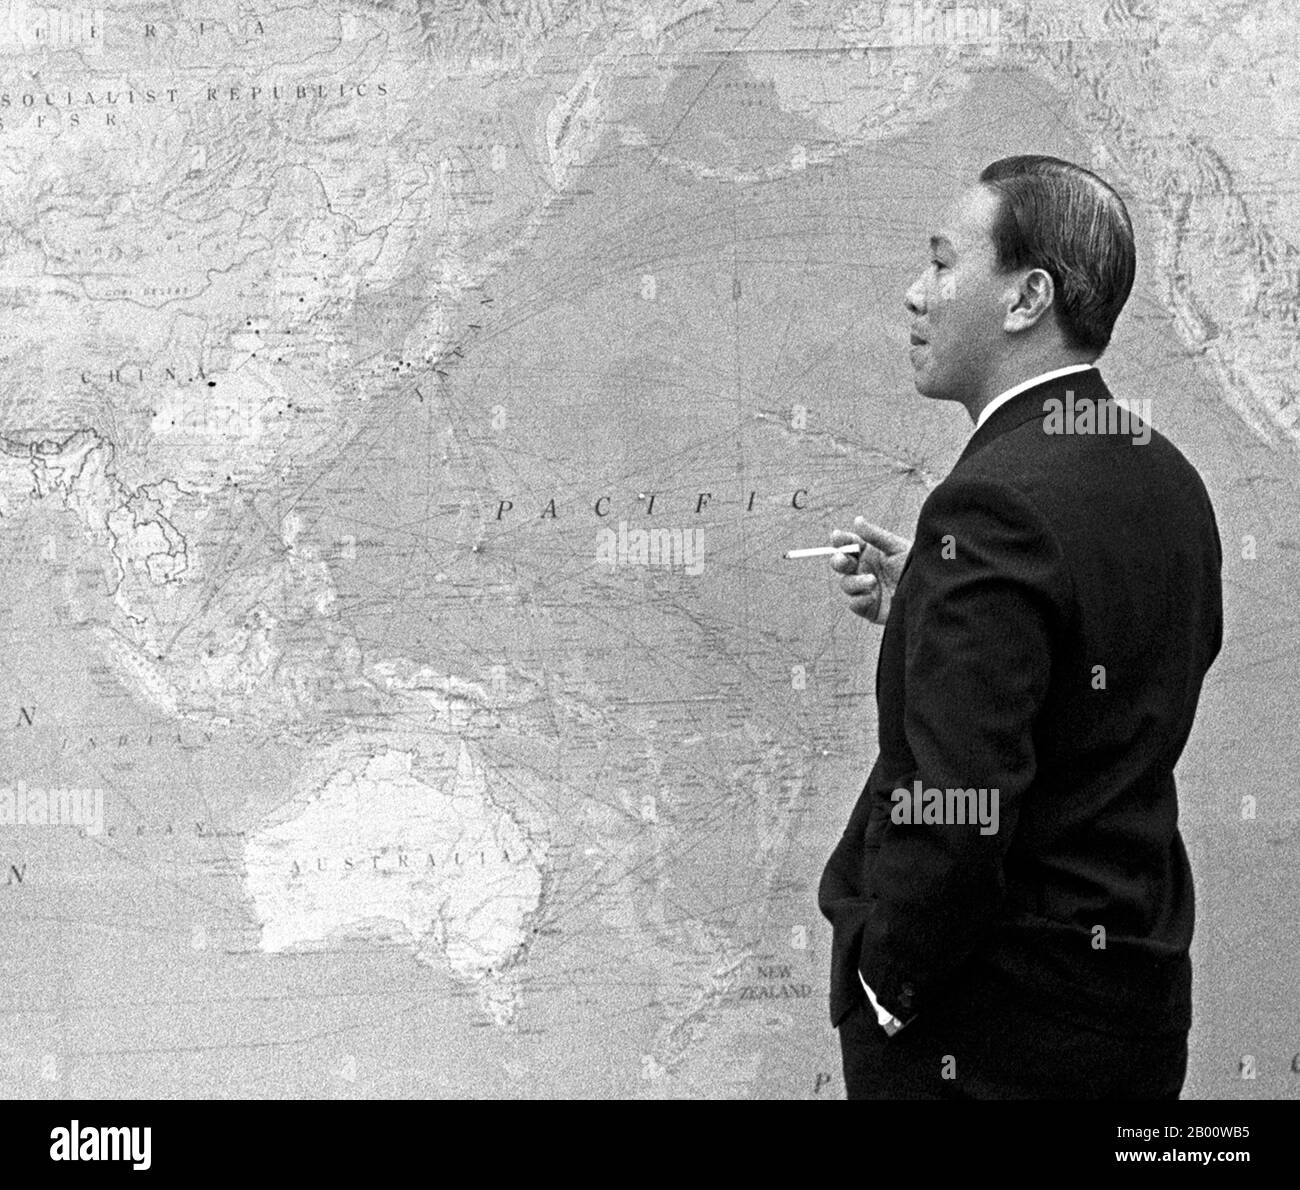 Vietnam: Le Président Nguyễn Văn Thiệu (Nguyen Van Thieu) du Sud Vietnam, debout devant une carte du monde, lors d'une réunion avec Lyndon B. Johnson à Hawaï, le 19 juillet 1968. Nguyen Van Thieu était un général de l'armée de la République du Vietnam (ARVN) qui est devenu le président du Sud Vietnam (1965-75), d'abord à la tête d'une junte militaire, puis après avoir remporté une élection frauduleuse. Il a établi un régime autoritaire et corrompu sur le sud du Vietnam jusqu'à ce que la nation se remâche et fuyait quelques jours avant la chute de Saigon et la victoire communiste ultime. Banque D'Images